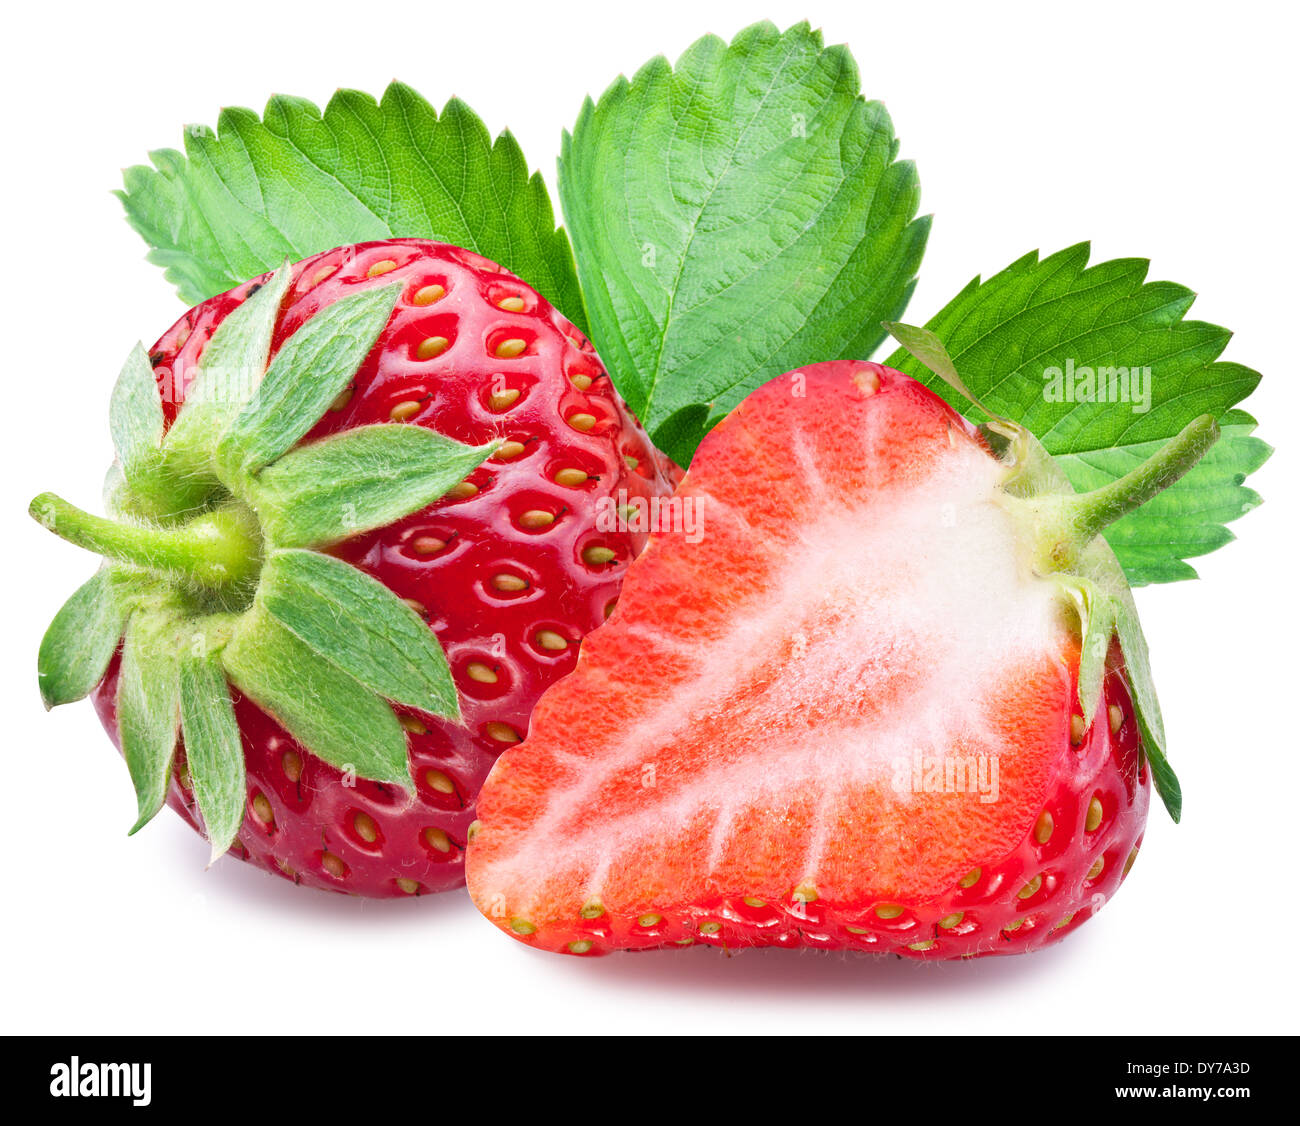 Erdbeeren mit Blättern. Datei enthält Beschneidungspfade. Stockfoto